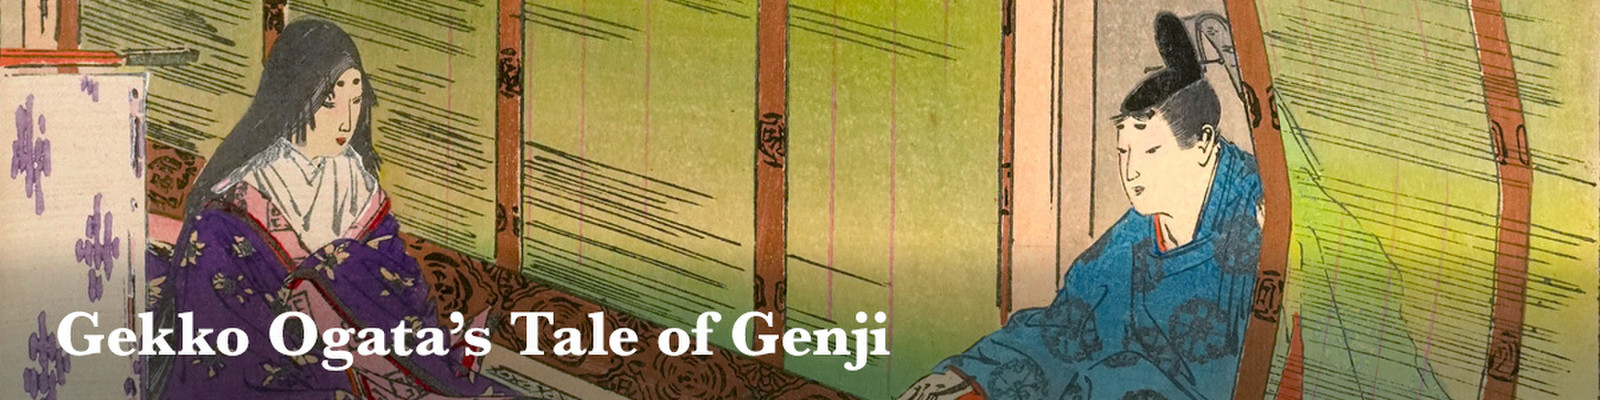 Gekko Ogata's Tale of Genji